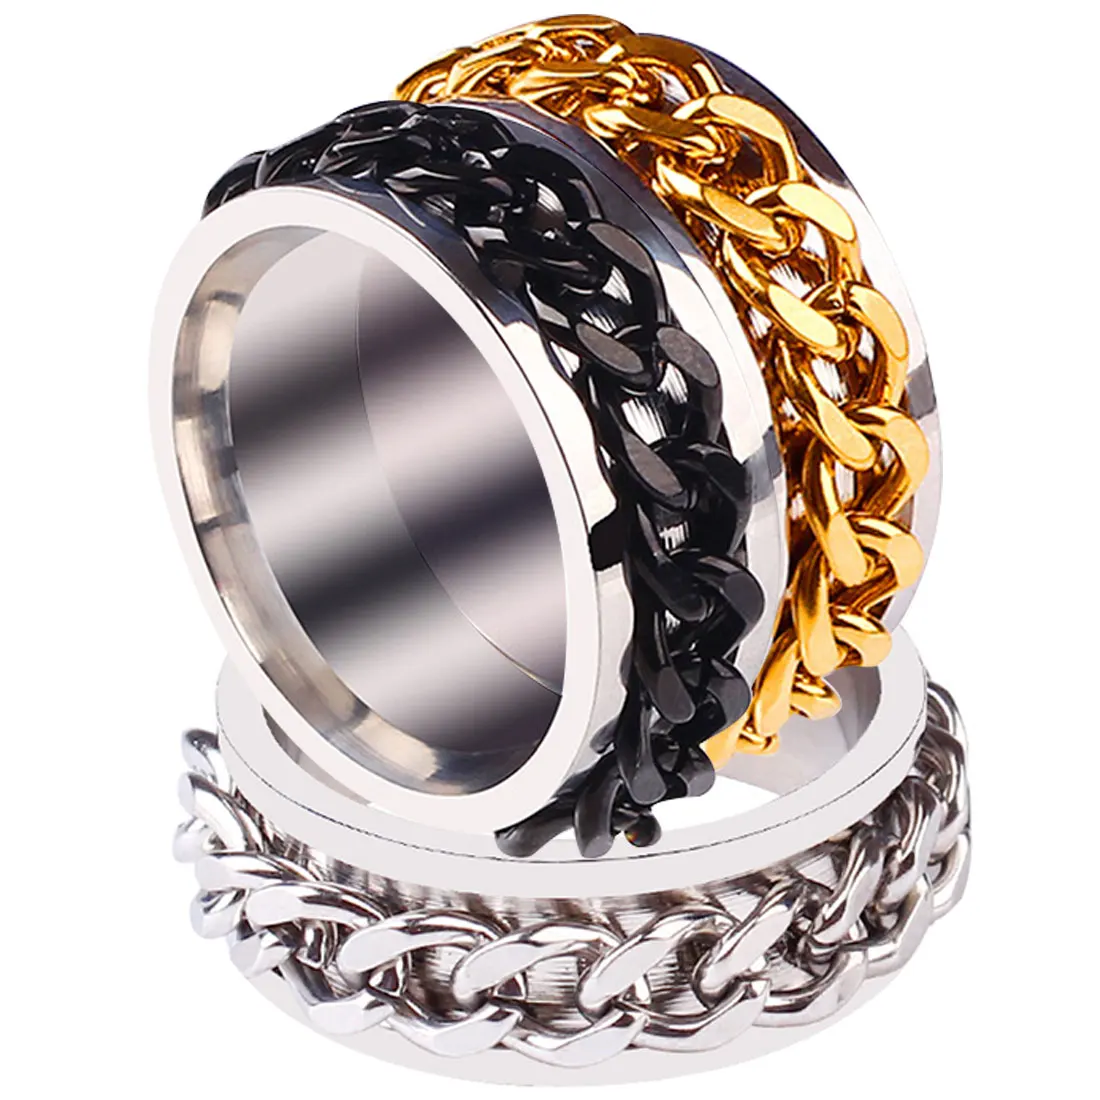 Высокое качество кольцо Титан стали вращающаяся цепь Кольцо Личность мужские кольцо панк-рок бренд кольцо унисекс Дикий ювелирные изделия